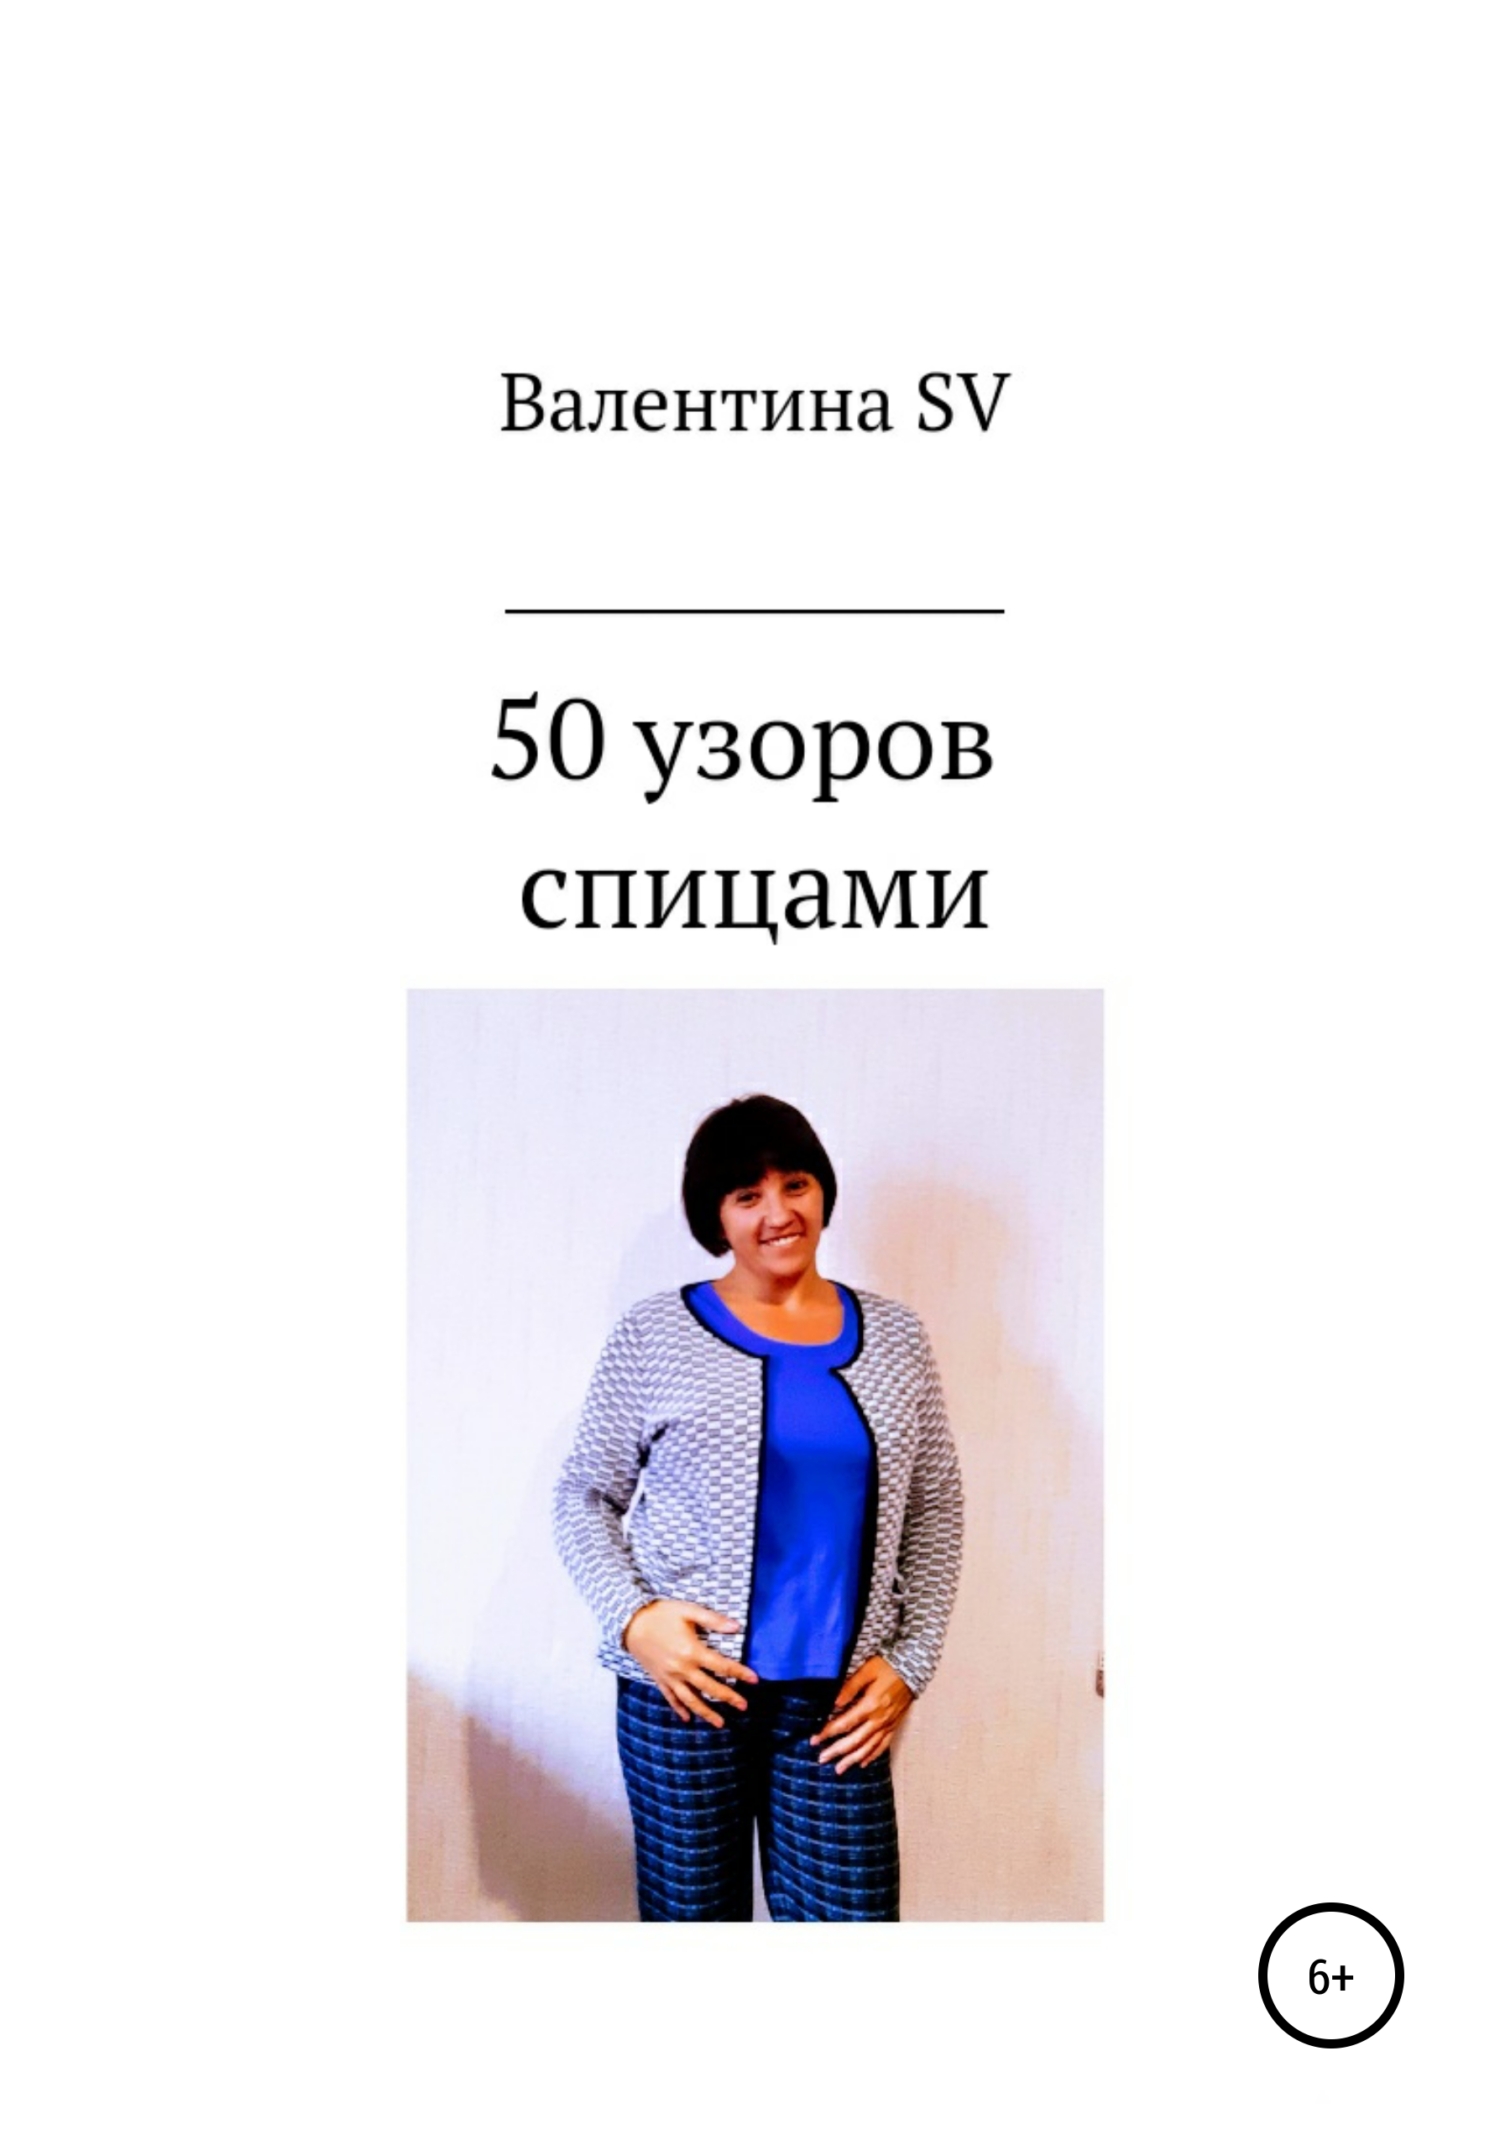 50 узоров спицами - Валентина SV